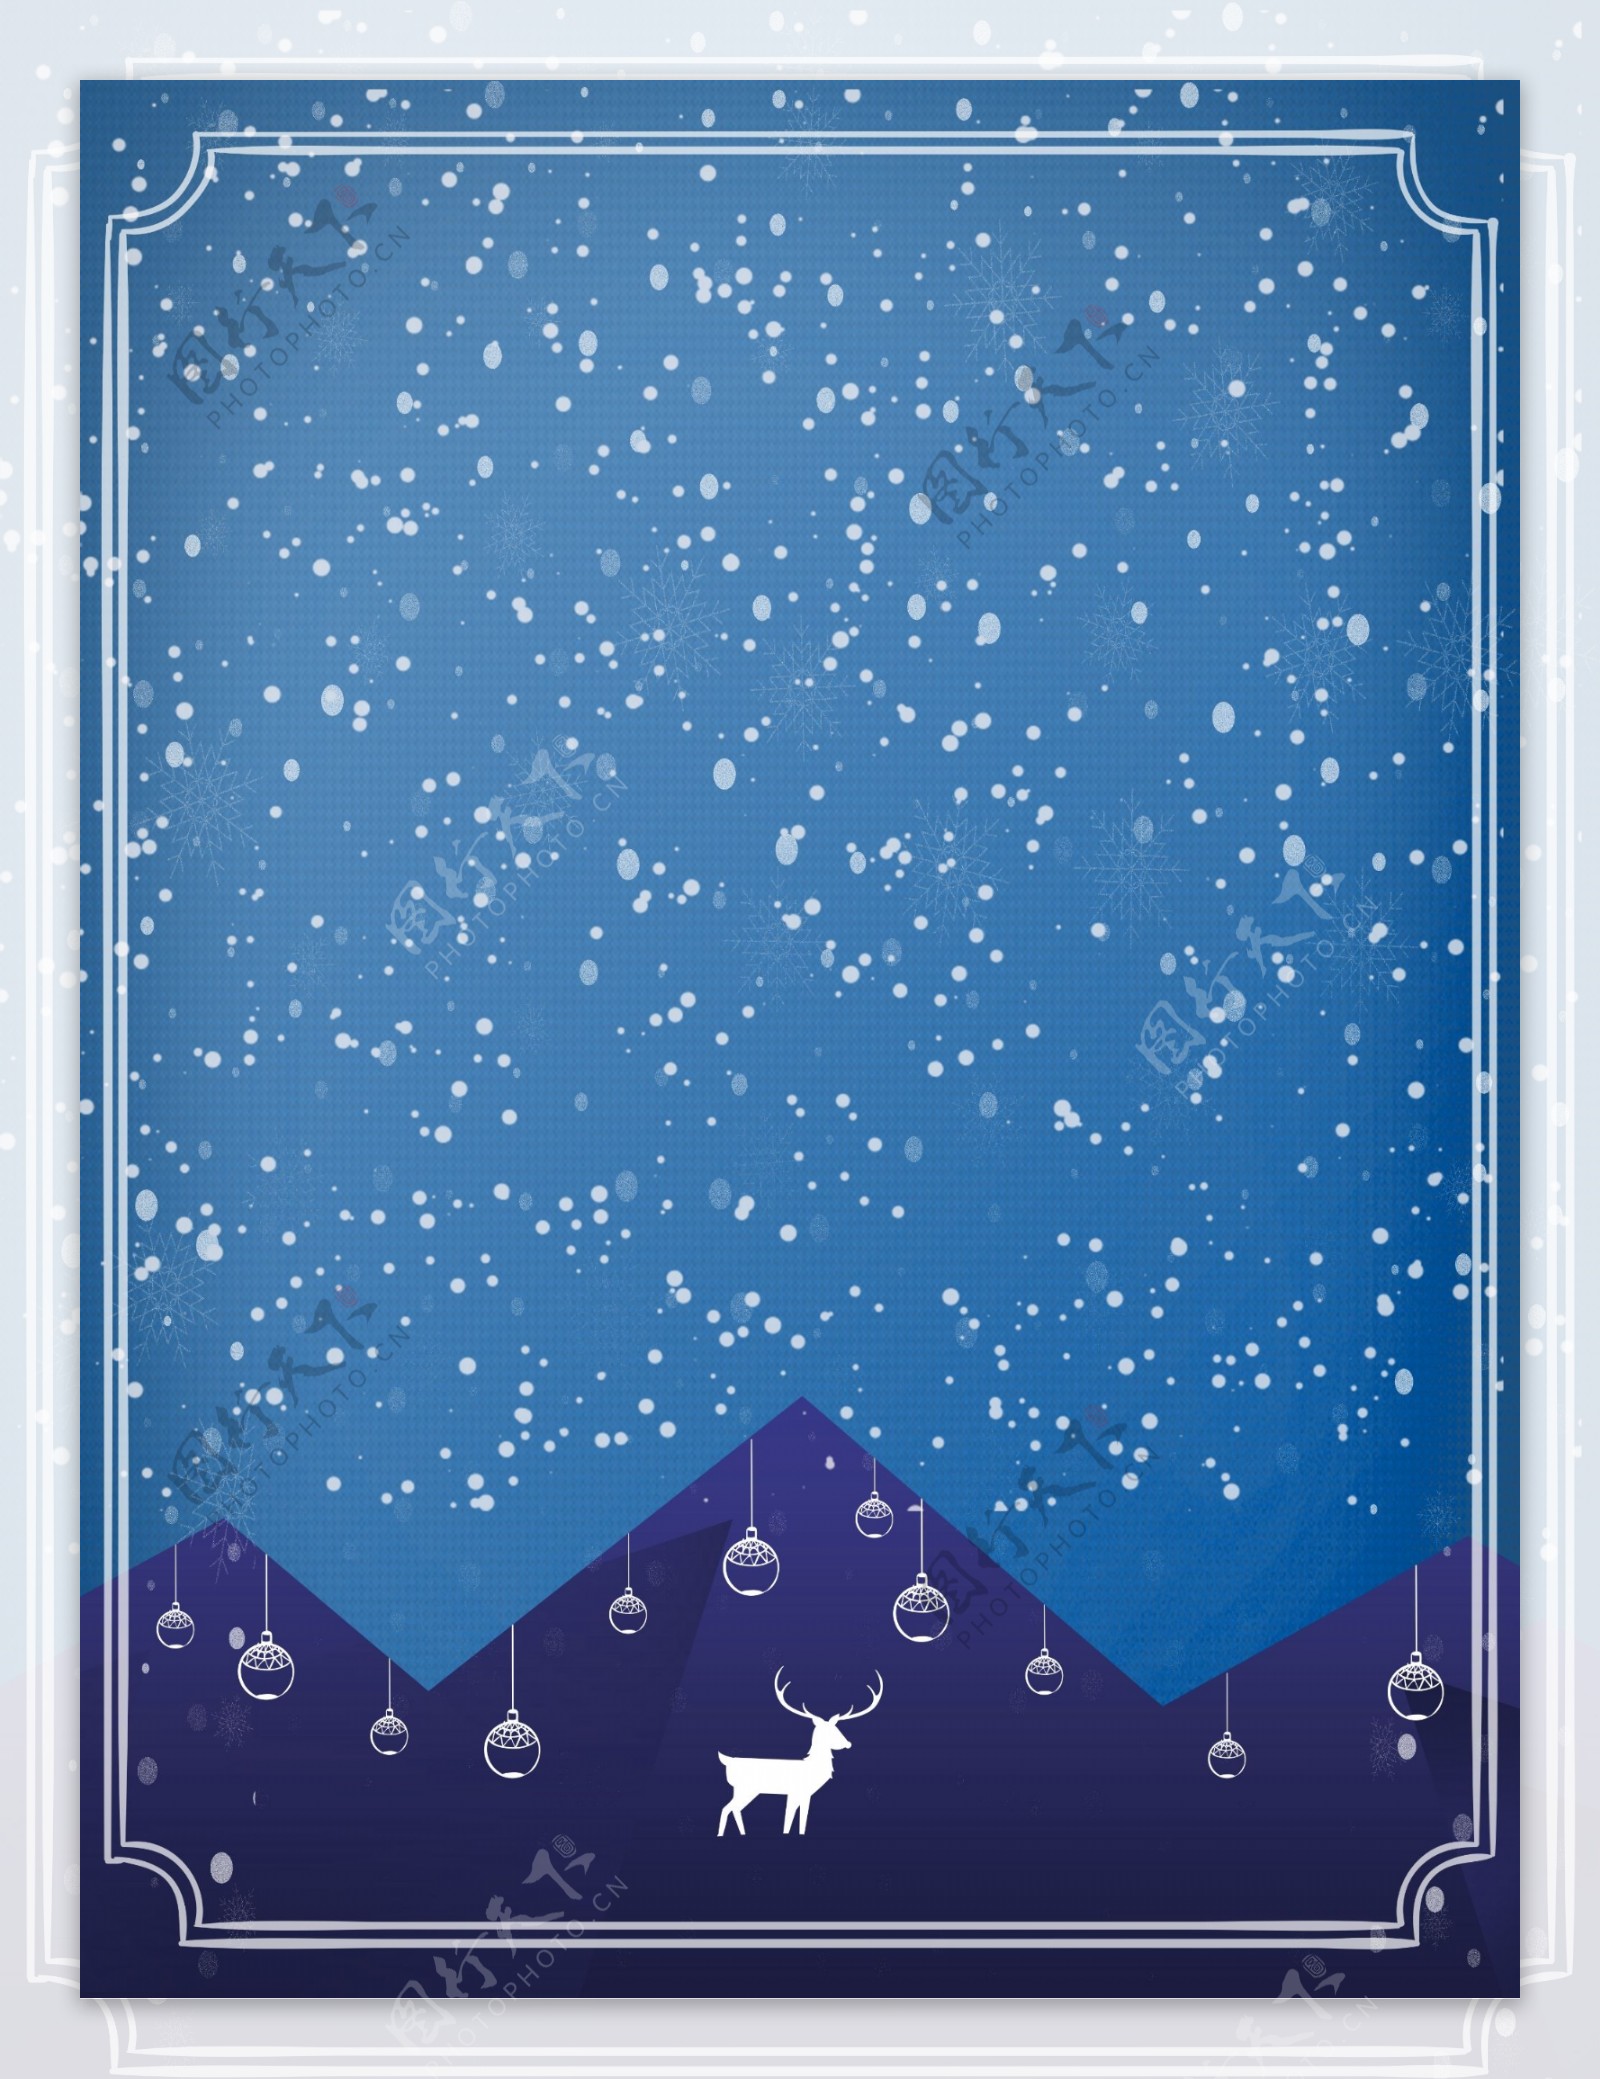 创意蓝色底纹雪花飘飘边框圣诞背景素材